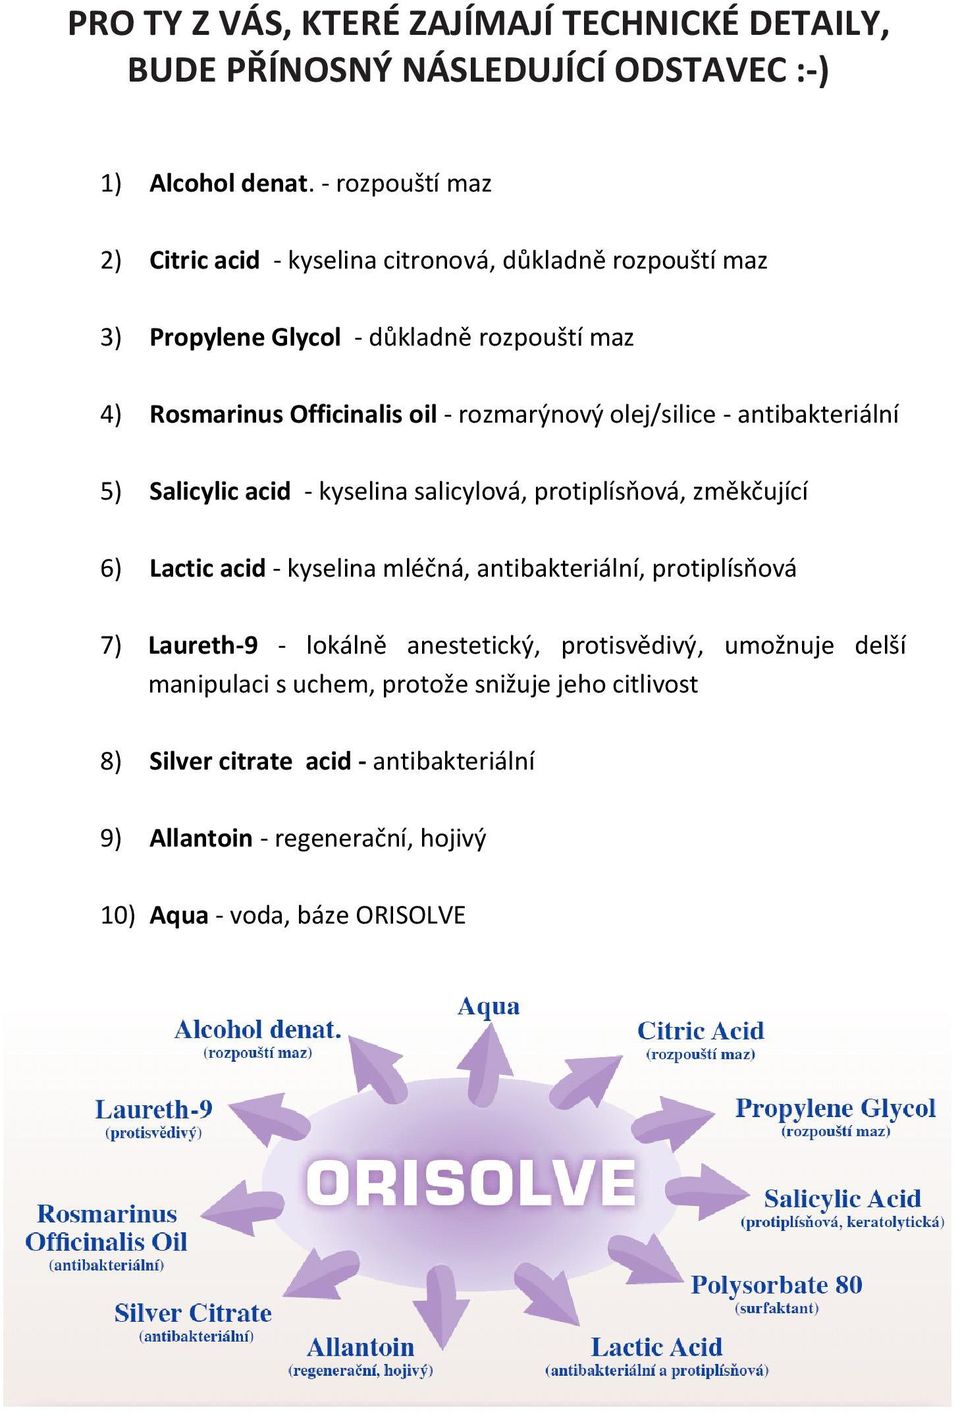 Salicylic acid - kyselina salicylová, protiplísňová, změkčující 6) Lactic acid - kyselina mléčná, antibakteriální, protiplísňová 7) Laureth-9 - lokálně anestetický, protisvědivý, umožnuje delší